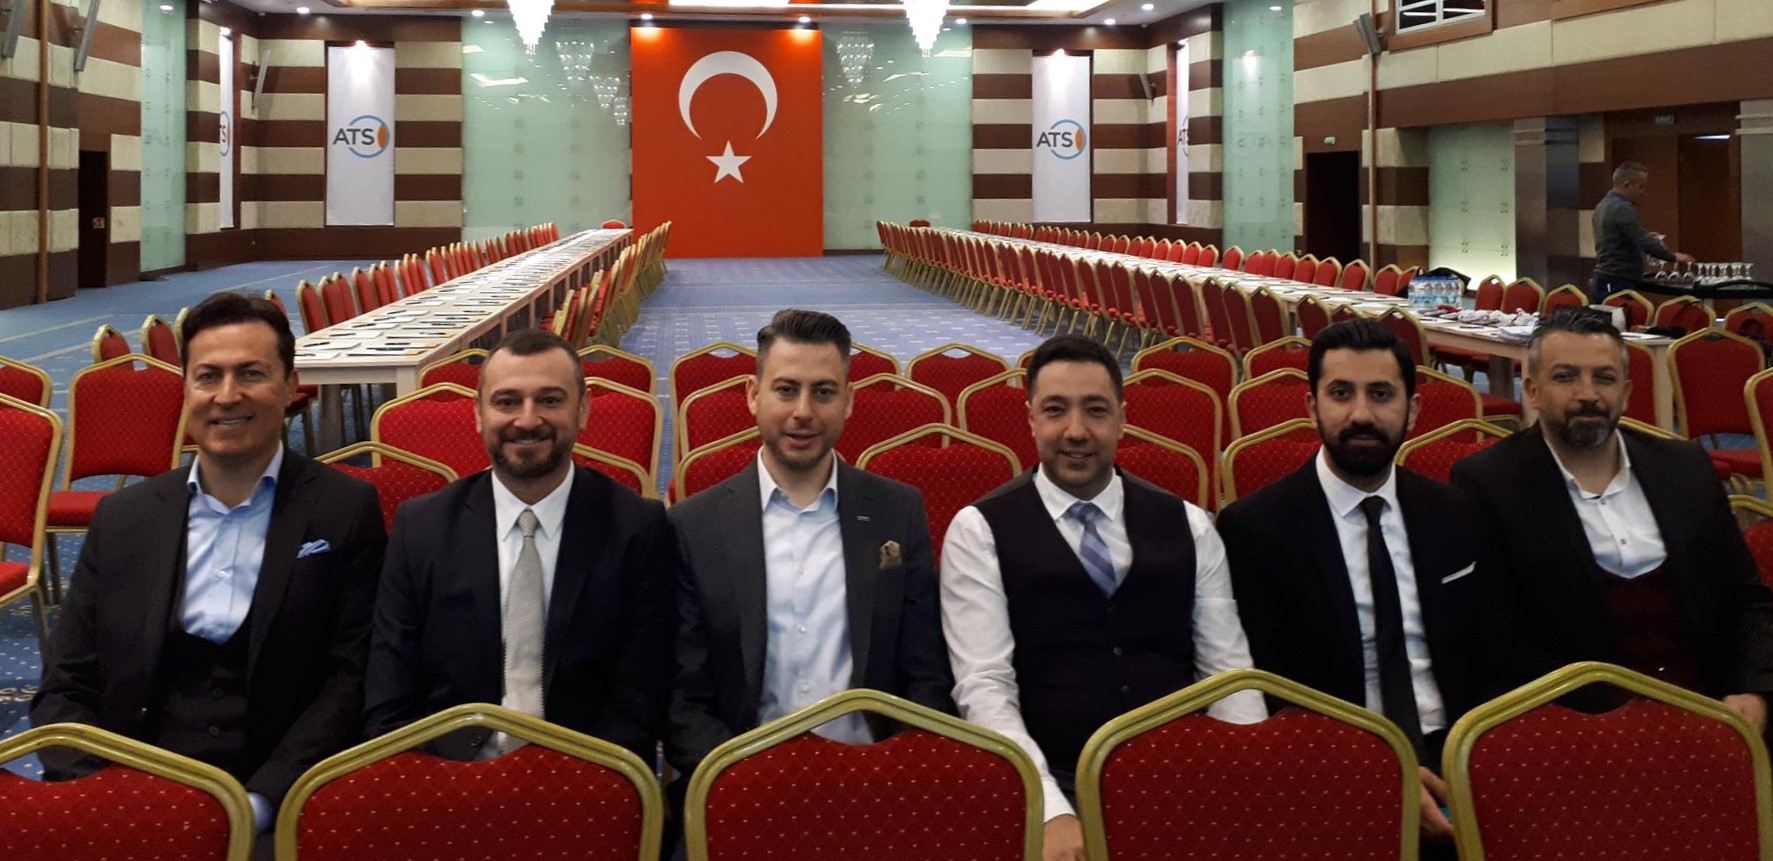 BAKSİFED Speed Networking – Ticaret Köprüsü Etkinliğinde ANTGİAD YK Başkanımız Mustafa Cengiz Ve Üyelerimiz Antalya, Burdur, Isparta İşinsanları İle Buluştular.